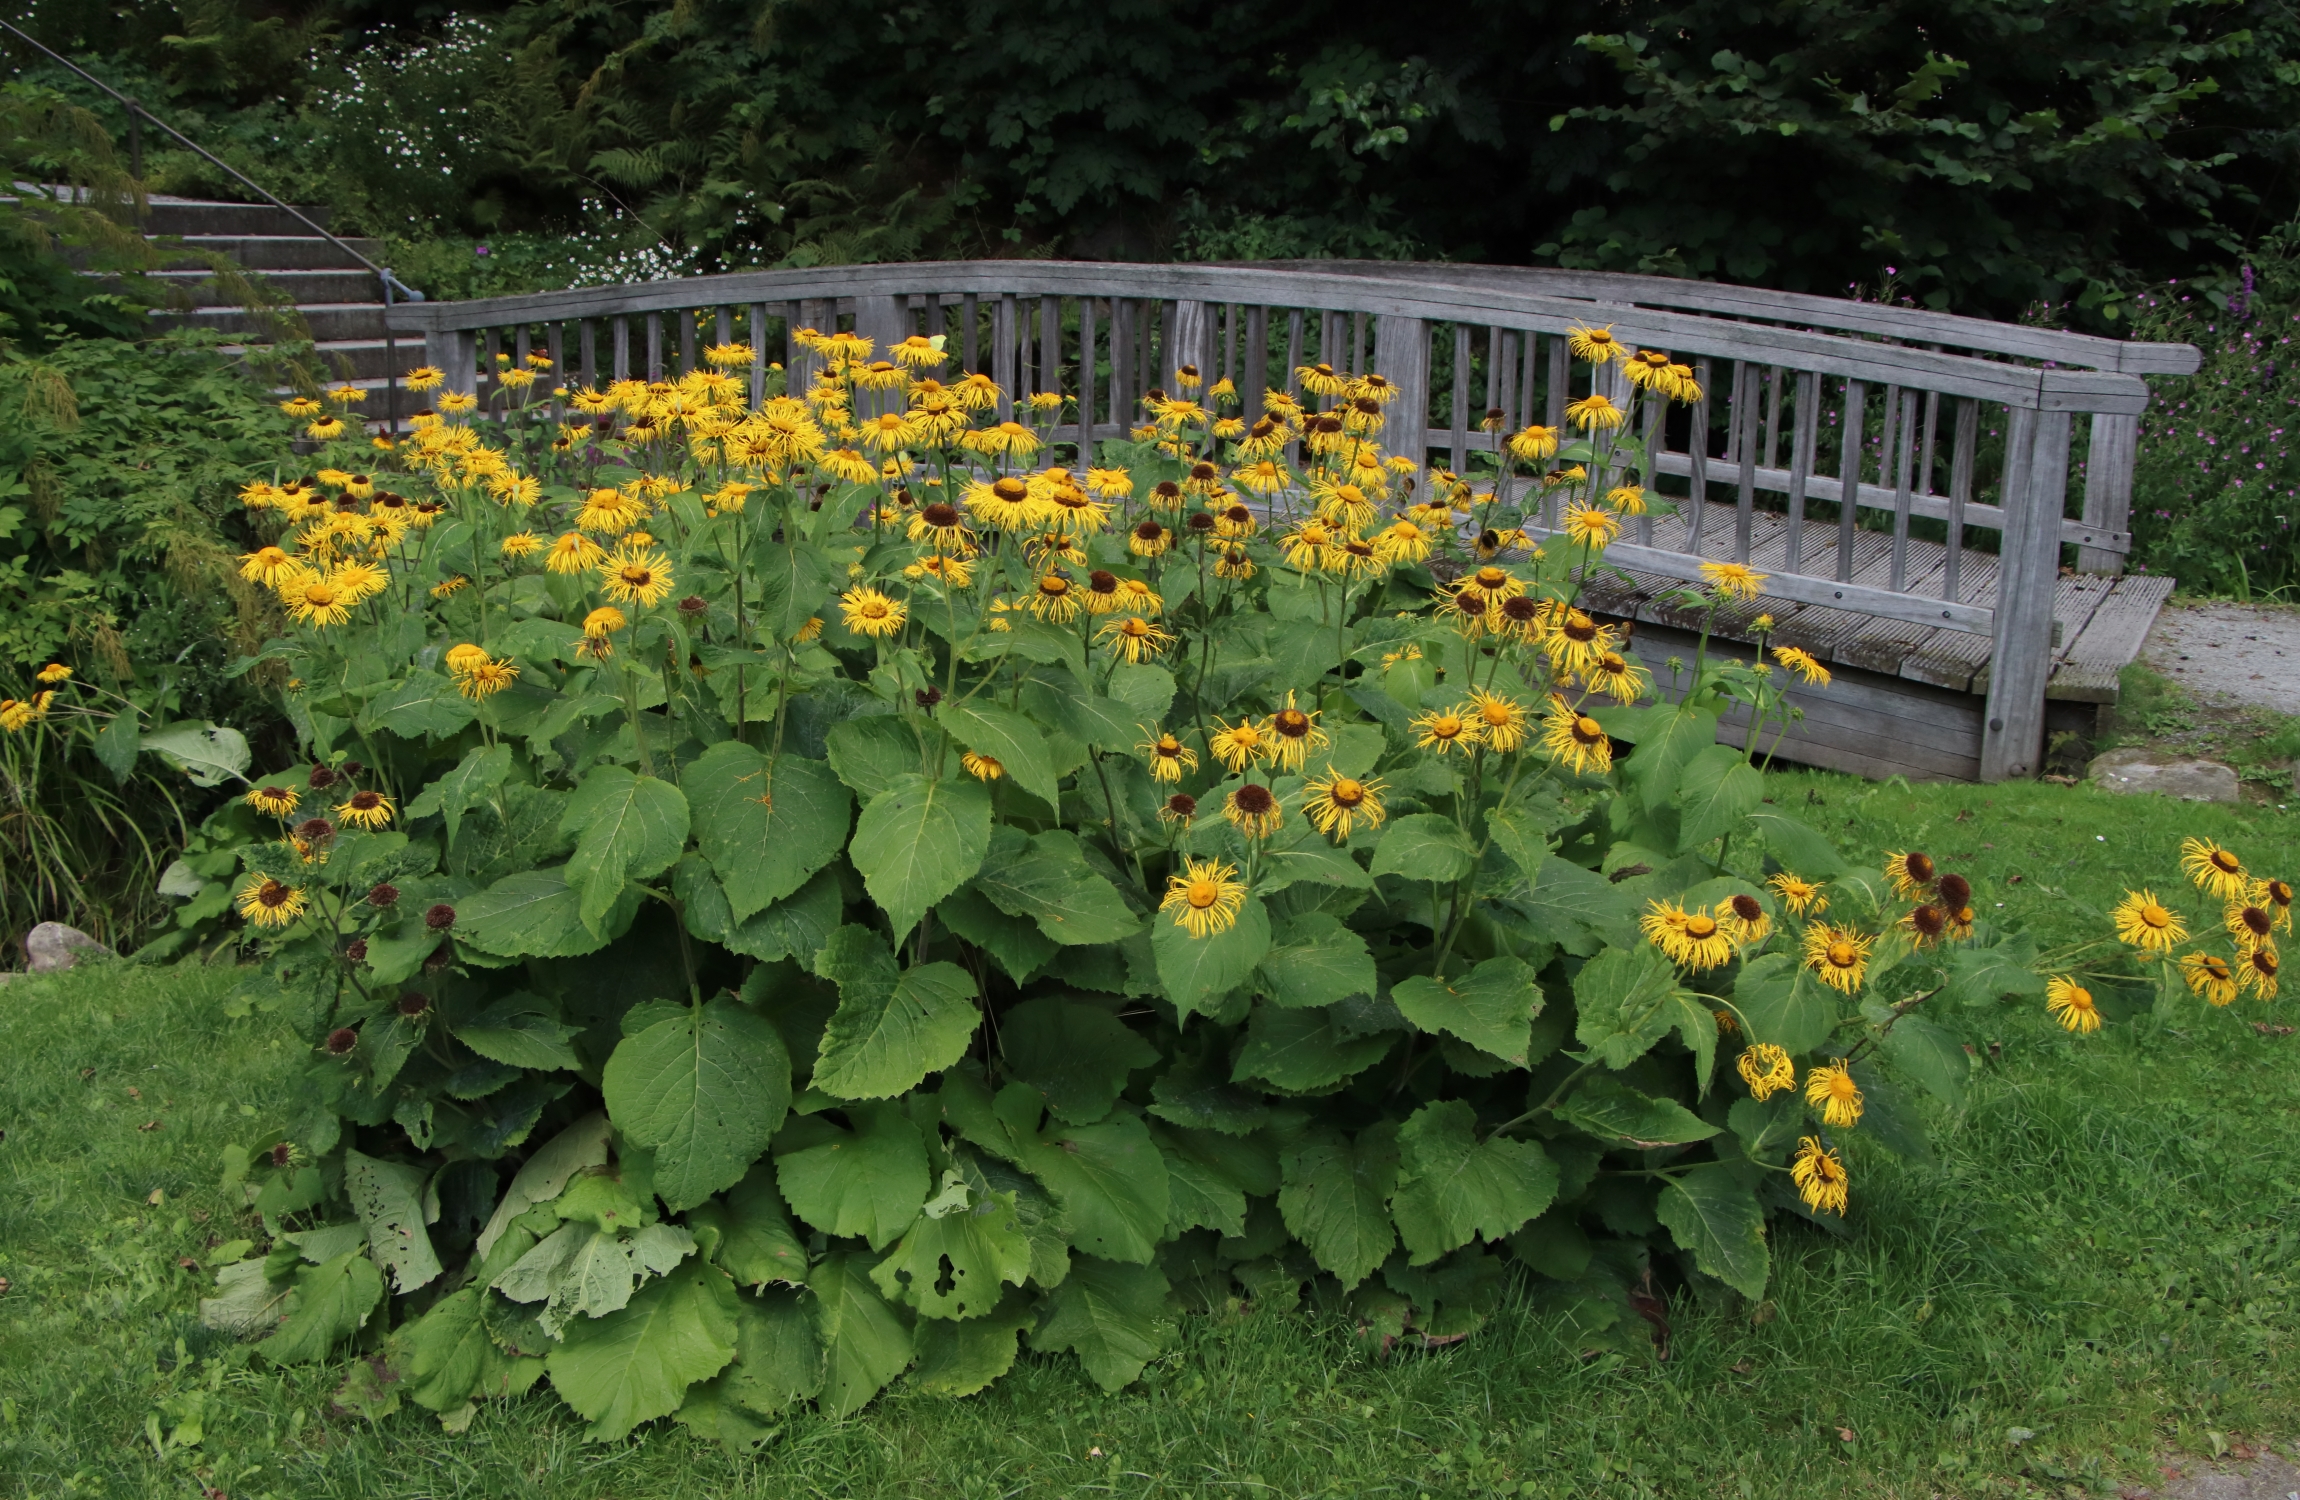 Eine Gruppe der Telekien. Eine Vielzahl der Blüten sind gelb gefärbt. Nach dem Verblühen färben sich diese bräunlich. Die Blätter haben eine Herzform und sitzen an den Stängeln. Im Hintergrund ist eine gebogene Holzbrücke über einen kleinen Bach. Links gehen Treppenstufen nach oben.